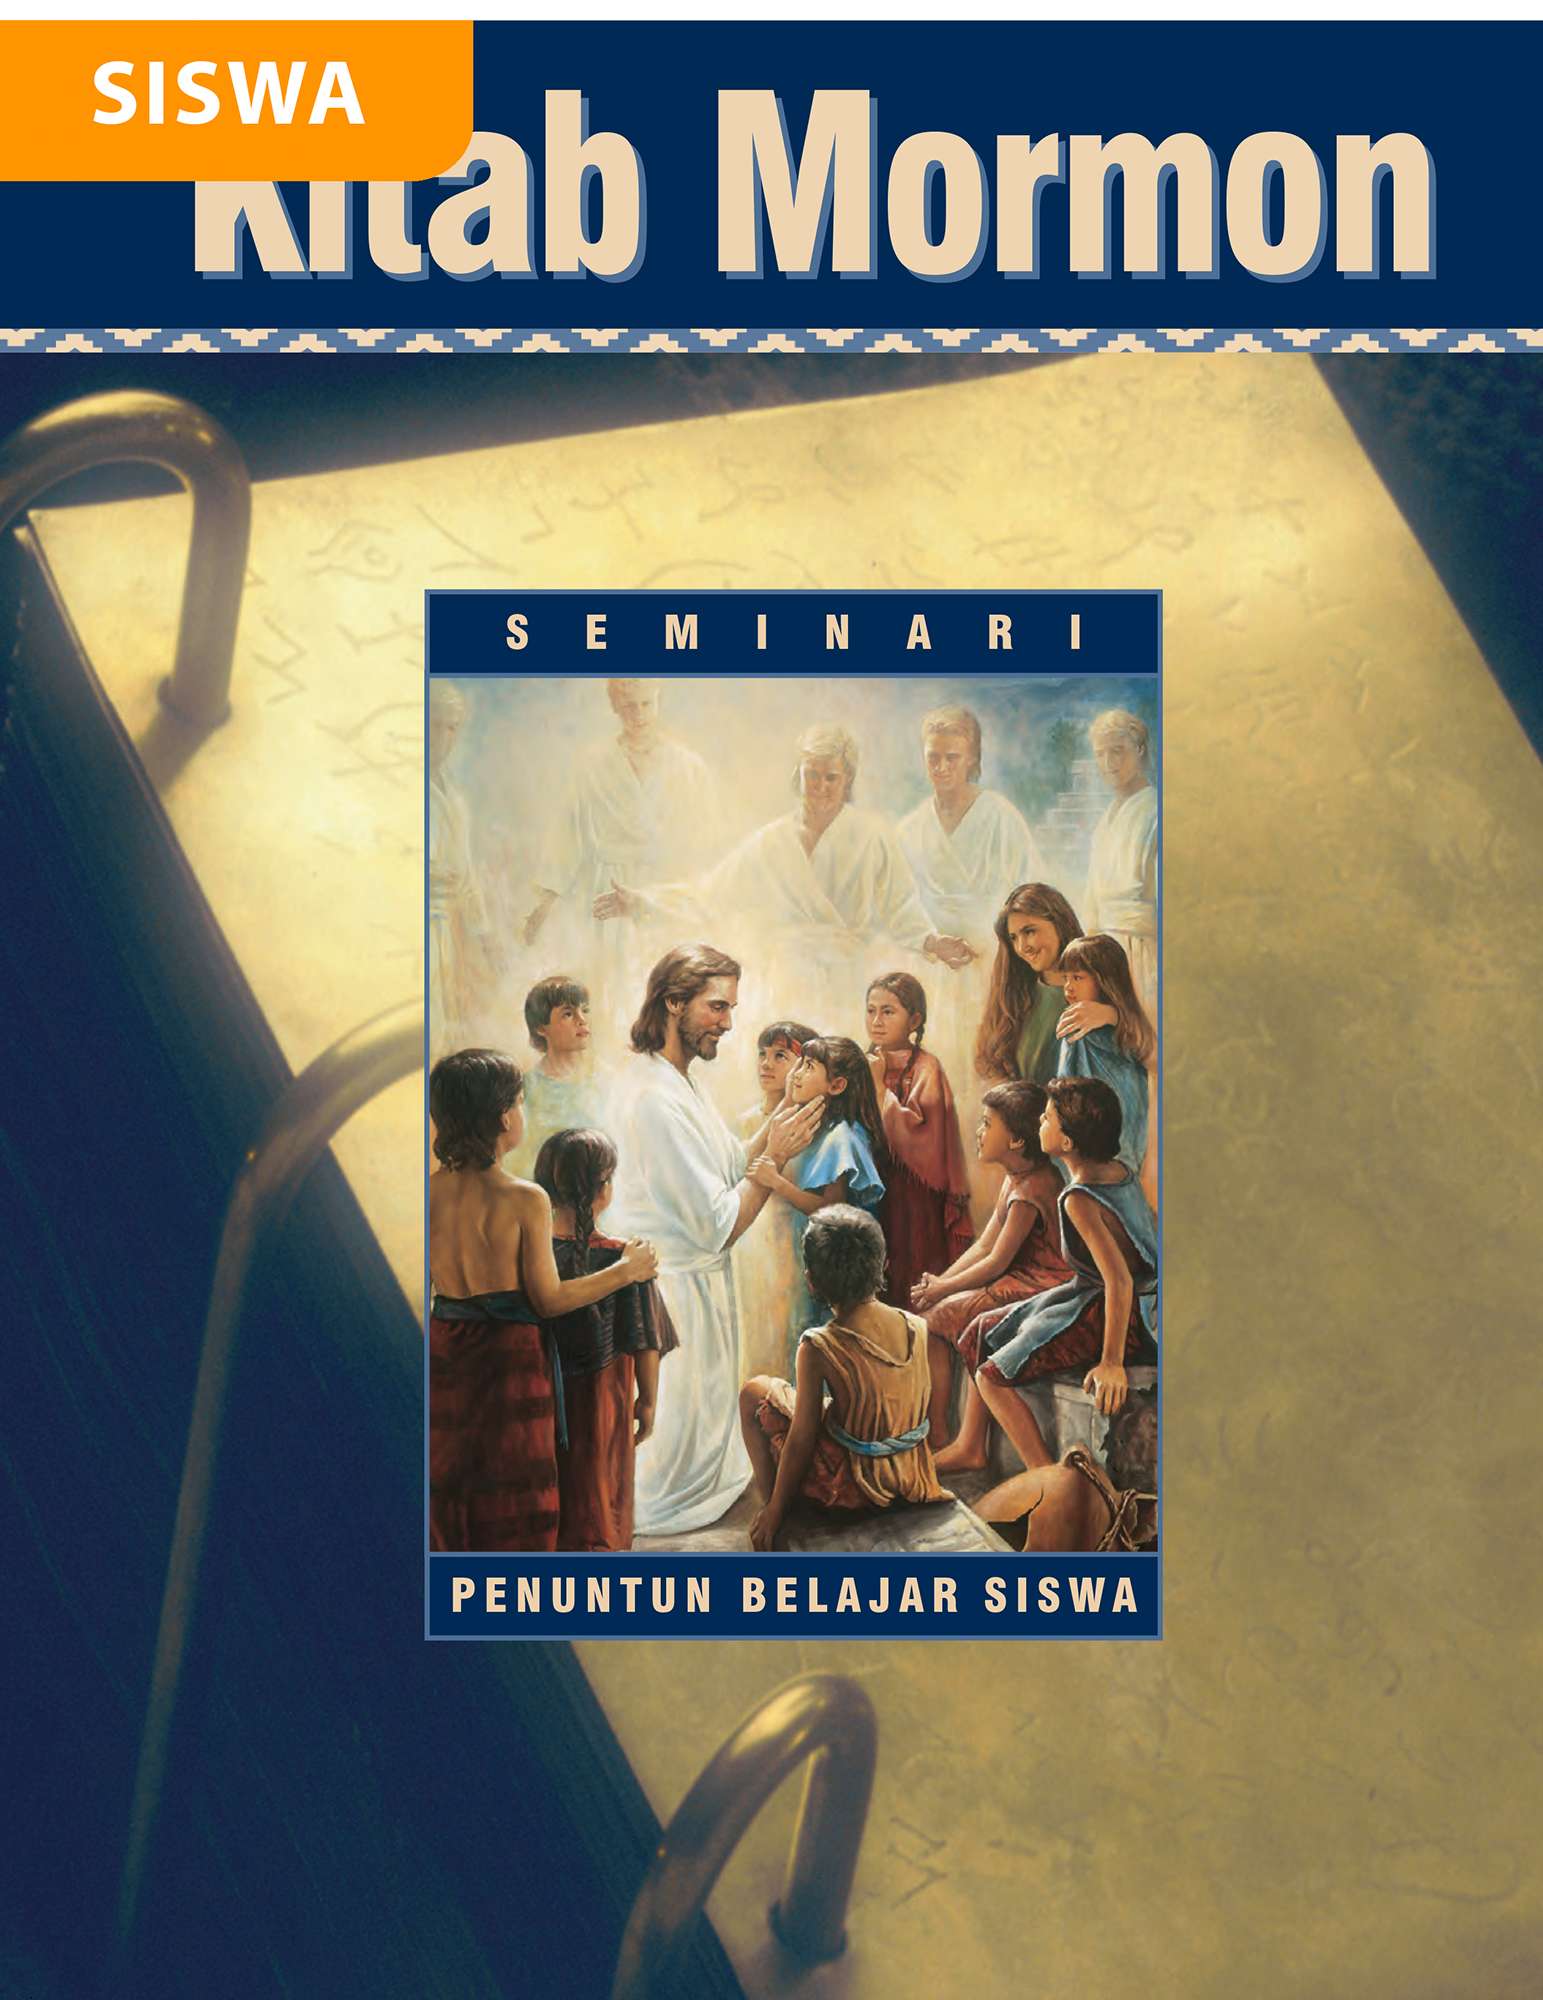 Penuntun Belajar Siswa Seminari Kitab Mormon